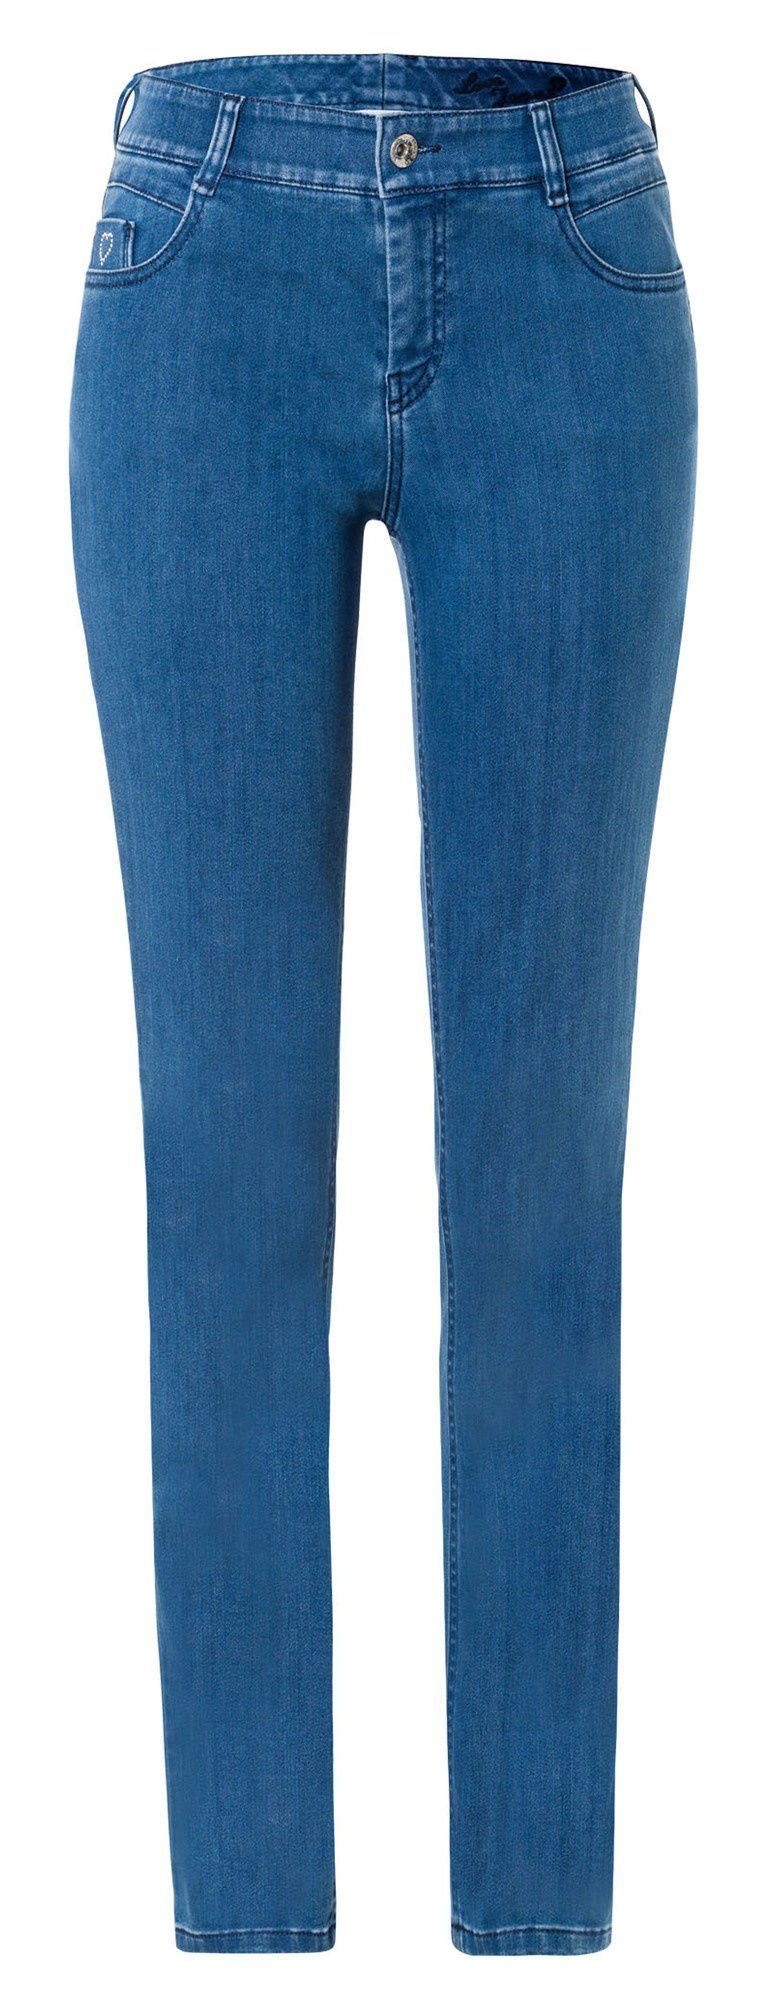 Atelier GARDEUR Stretch-Jeans ATELIER GARDEUR ZURI-061854-0165 mid blue ZURI